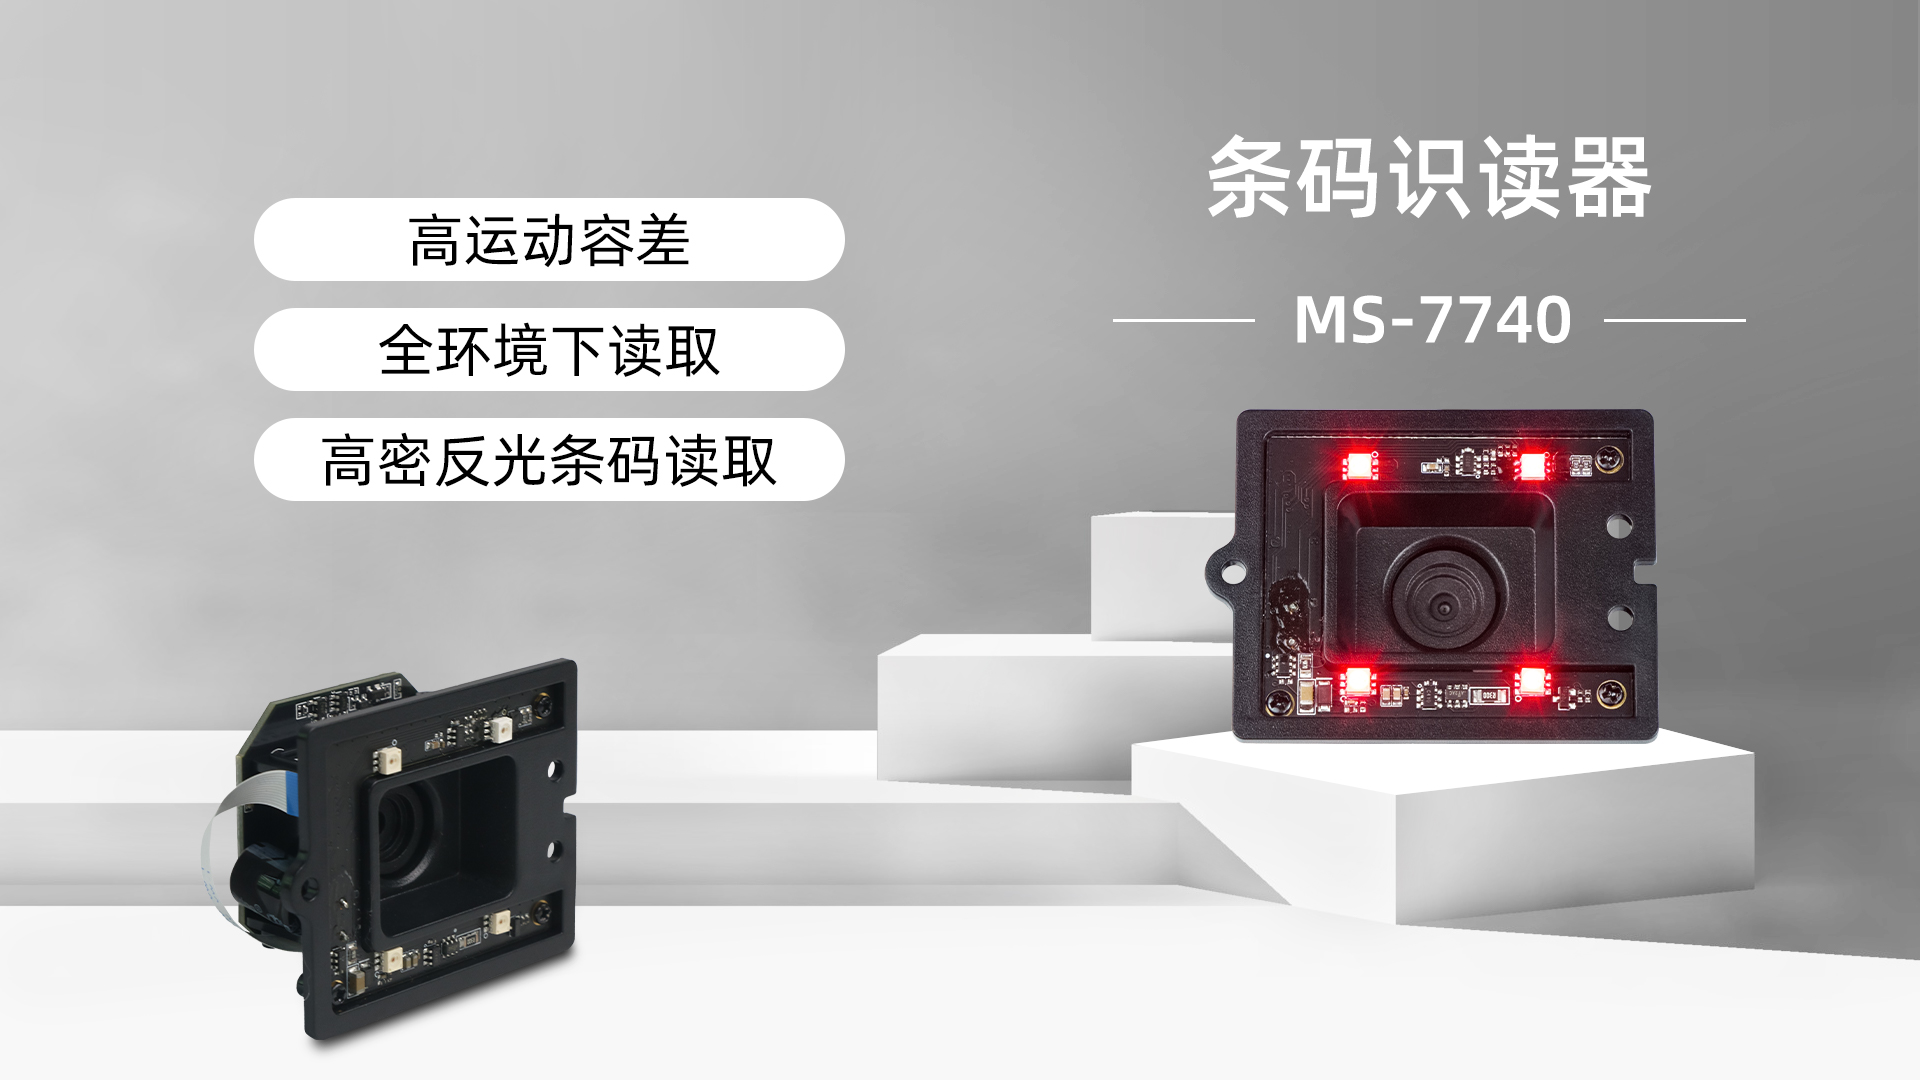 美松扫描器MS-7740为自助行业提供解决方案